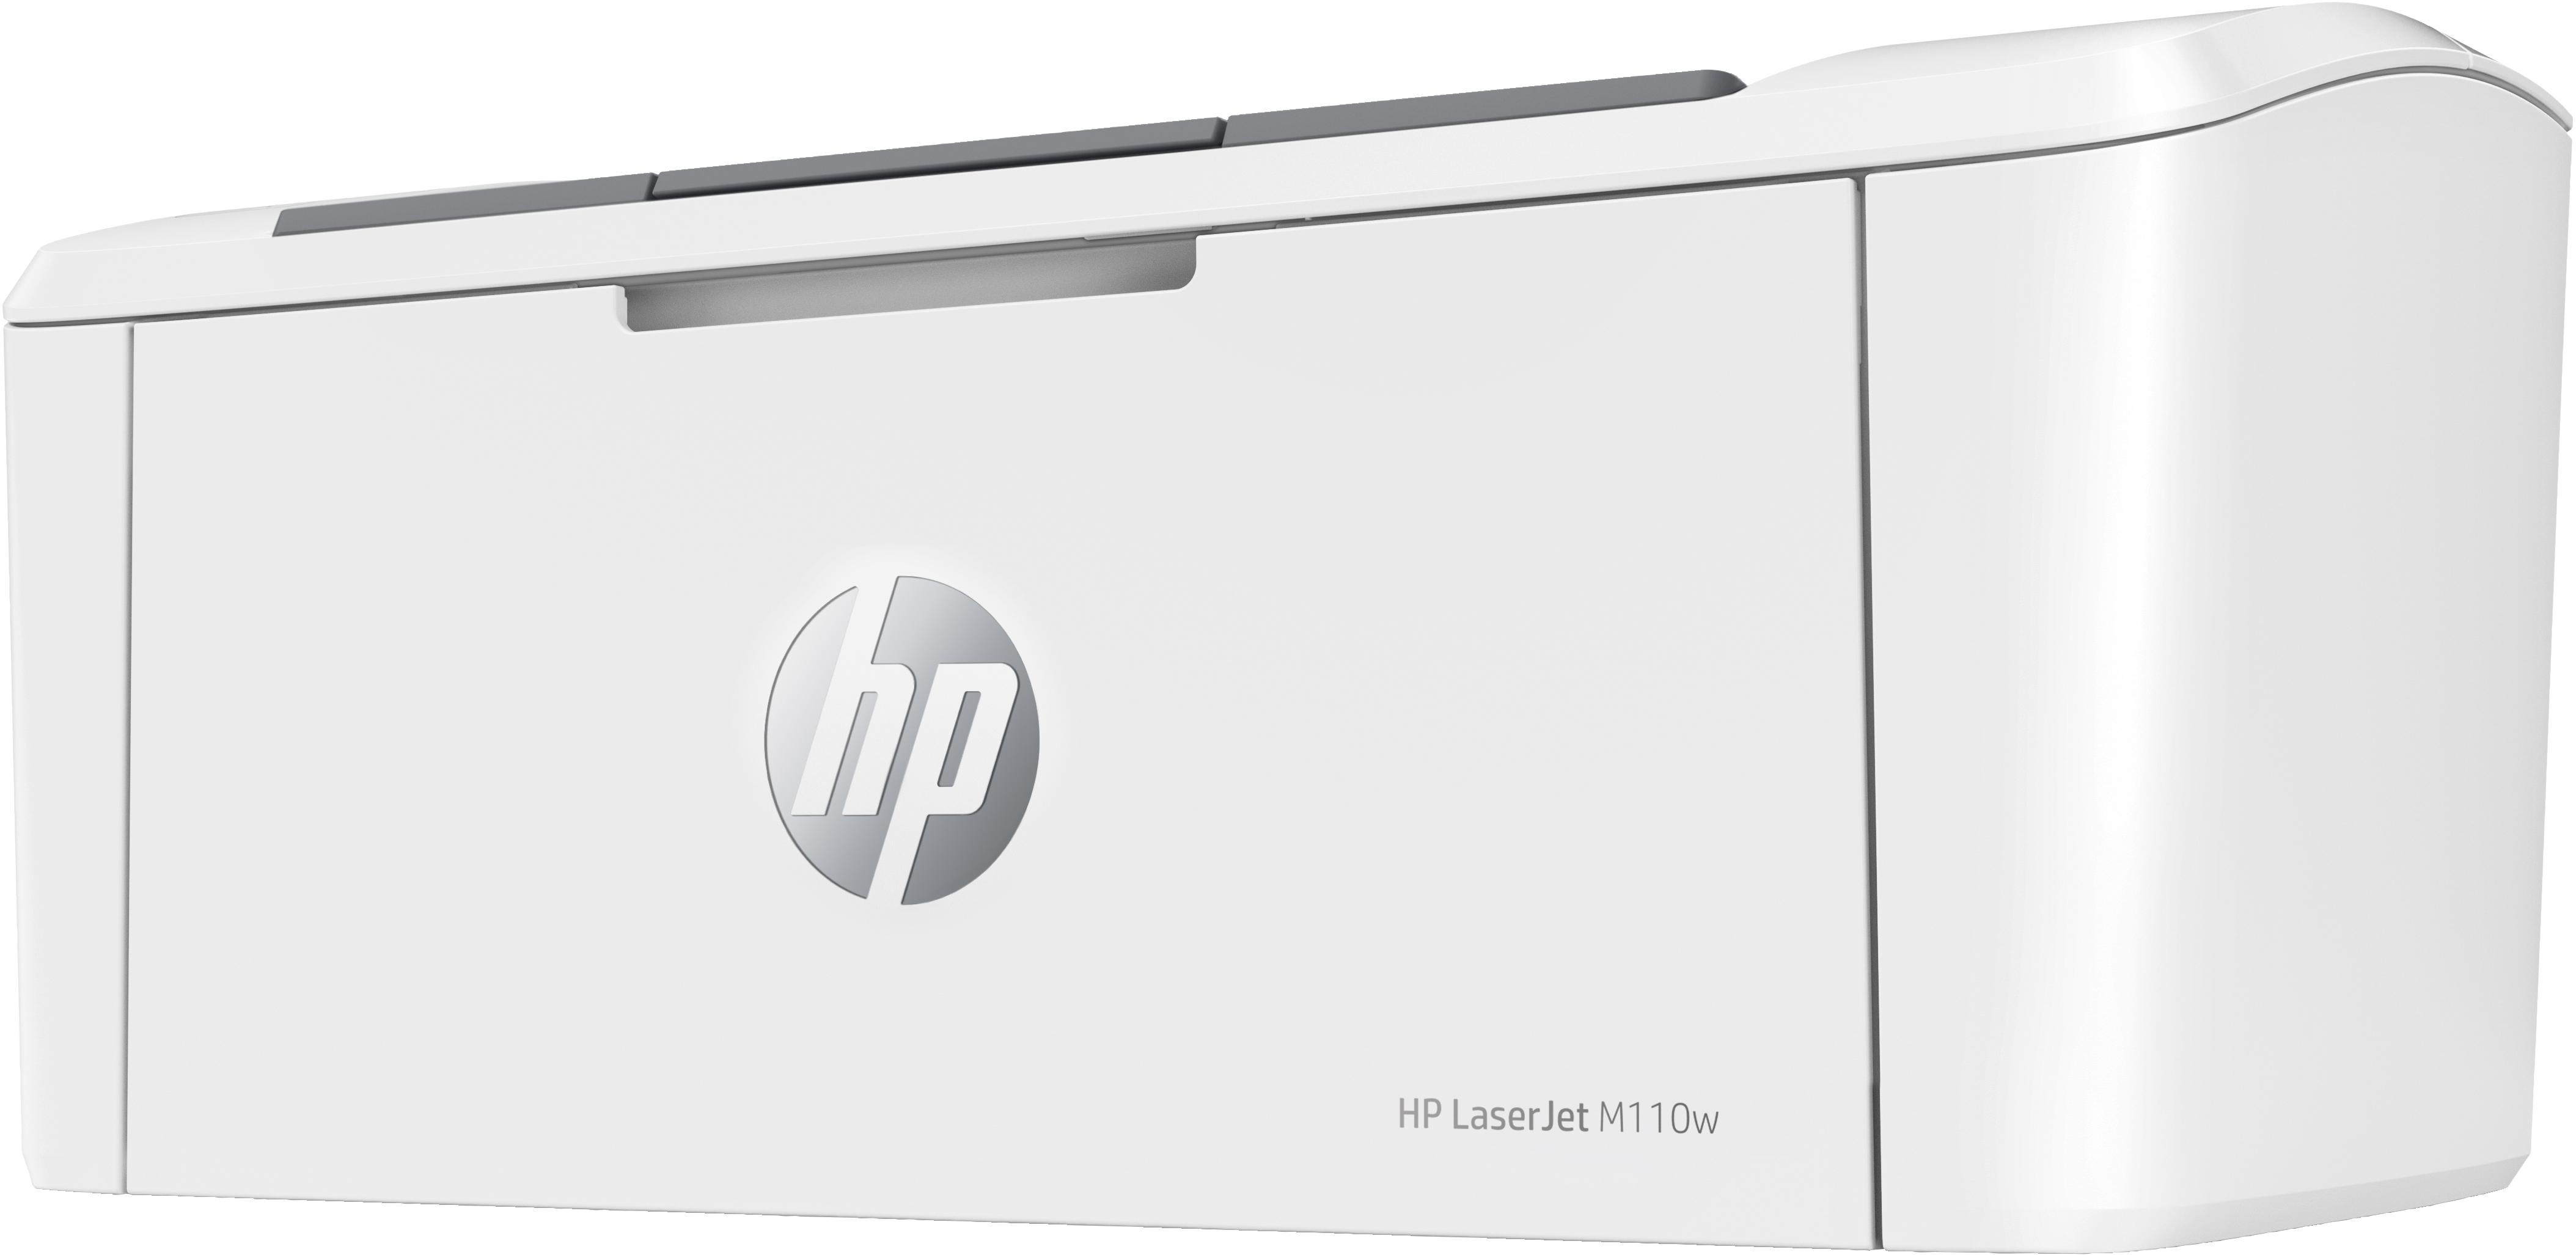 HP - Impressora Monocromática Laser HP LaserJet M110w (Impressão), Duplex Manual, Wireless